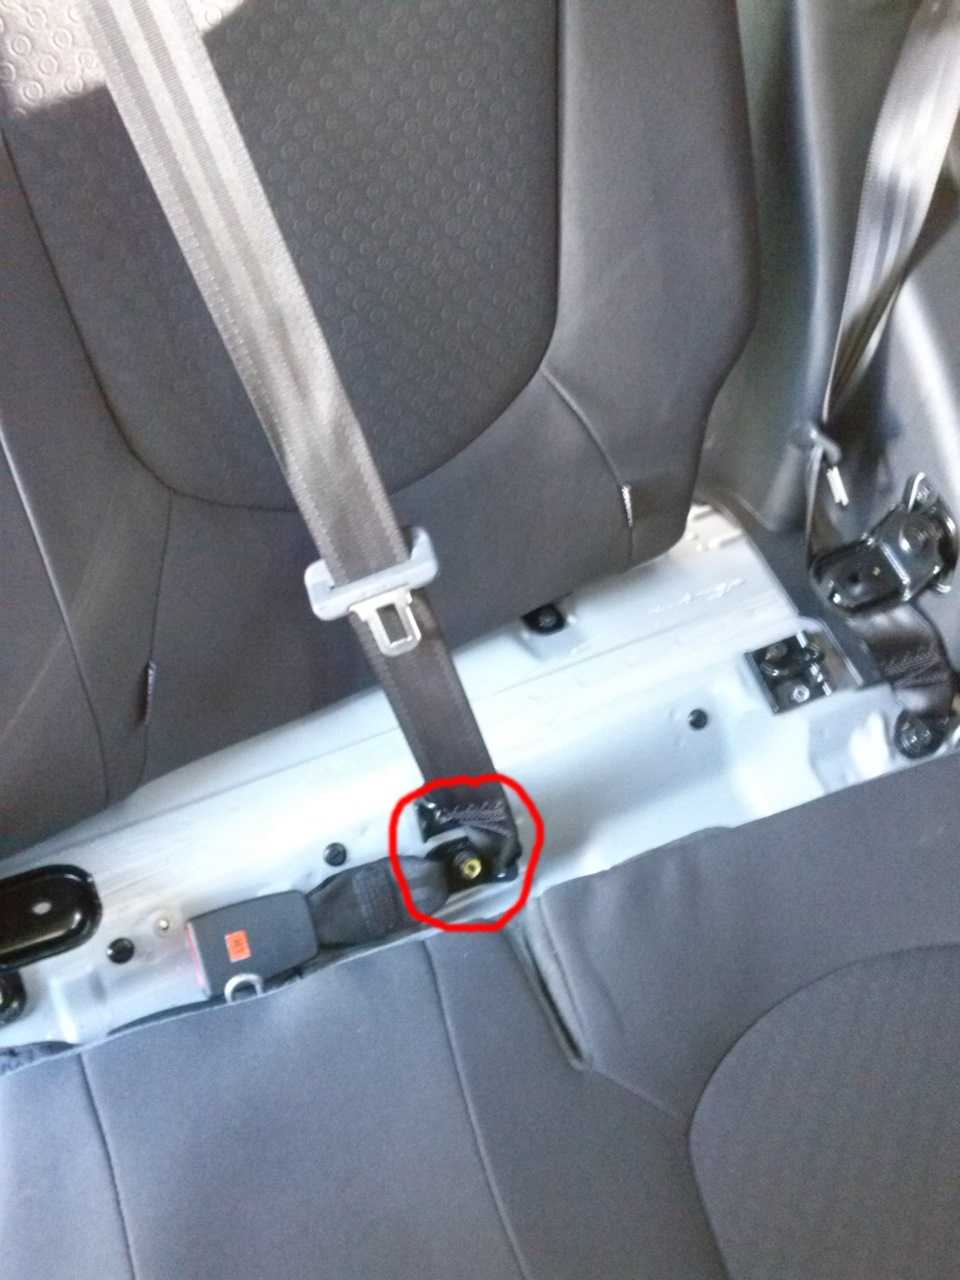 Как снять заднее сиденье на хендай солярис, фото и видео - авто сто онлайн